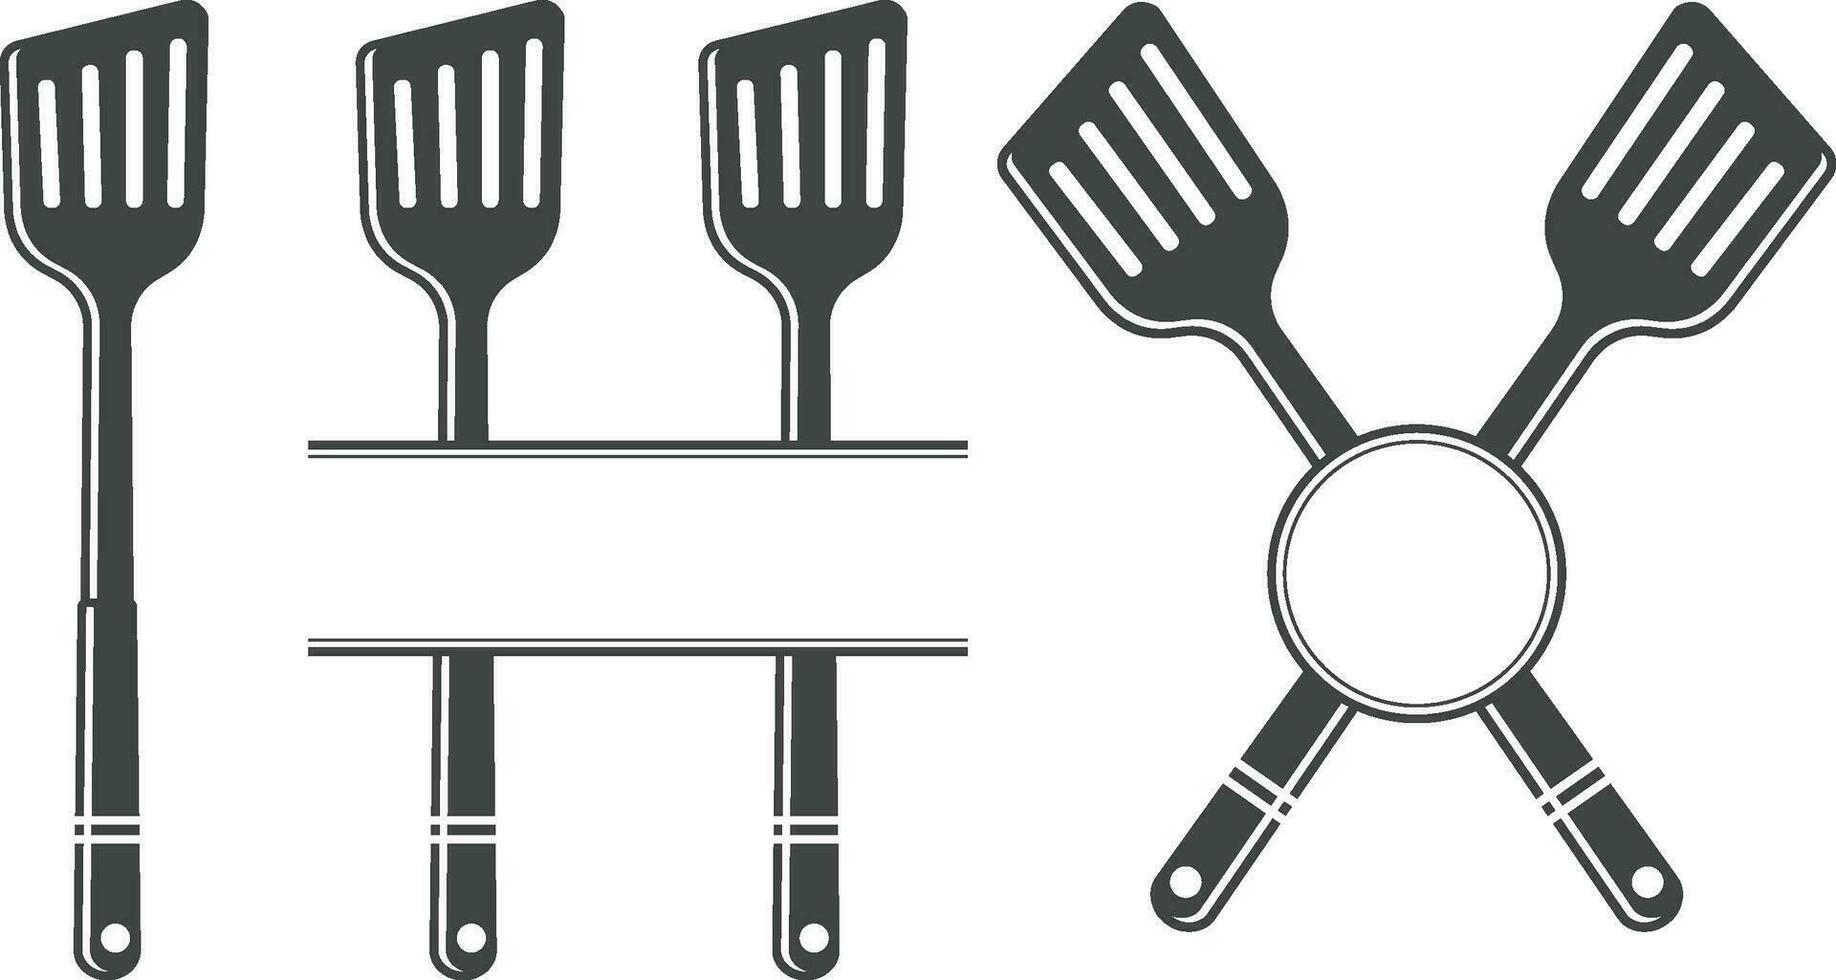 Spoon Monogram vector, Spoon Silhouette, Spoon Vector, Restaurant Equipment, Clip Art, Fork Spoon and Knife monogram, Vector, illustration, Slicer, knife, Fork vector